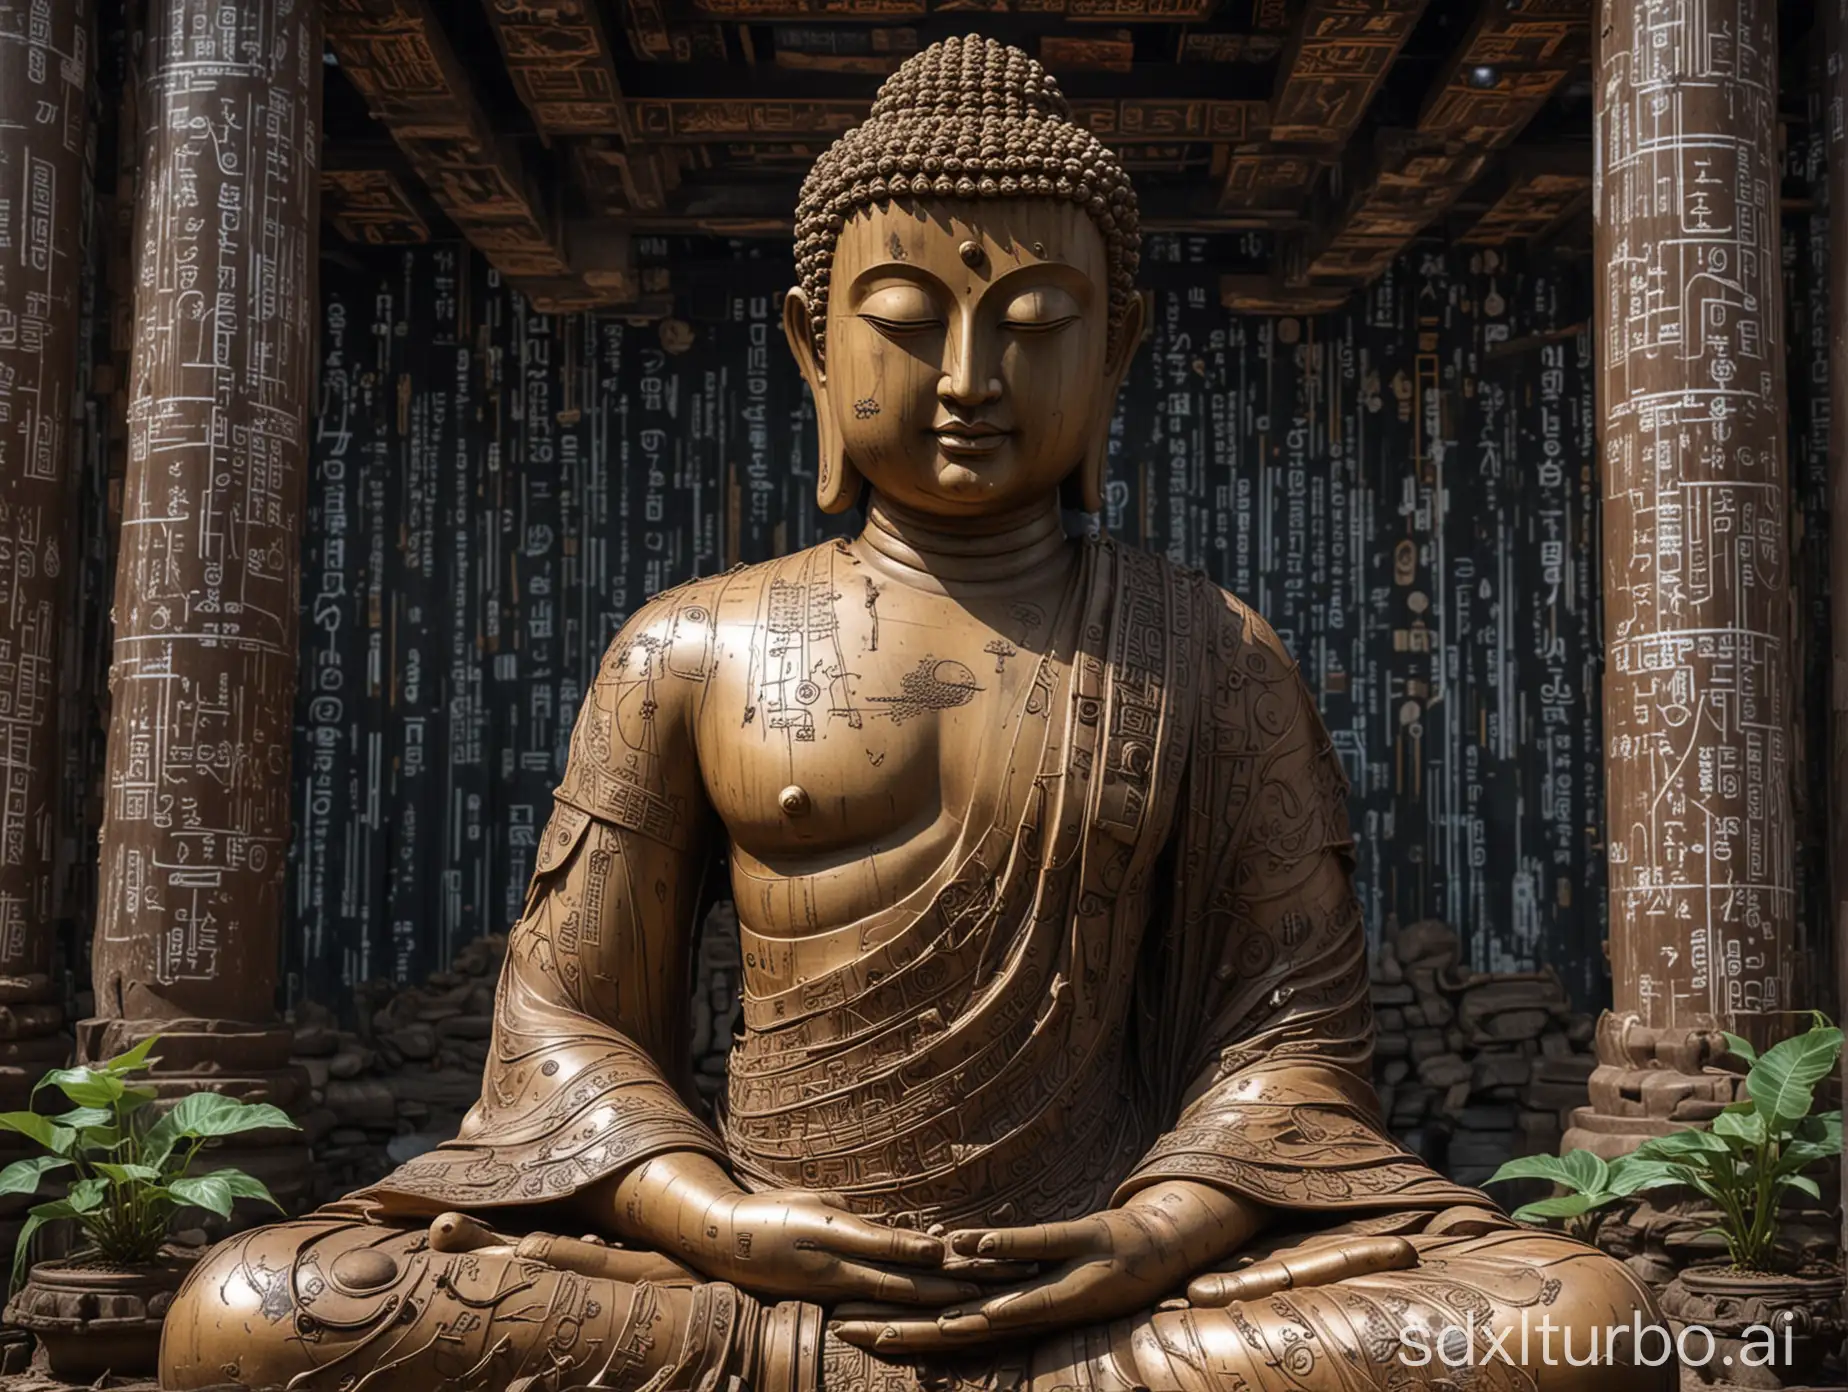 Buddha-Statue-Surrounded-by-Futuristic-SciFi-Decor